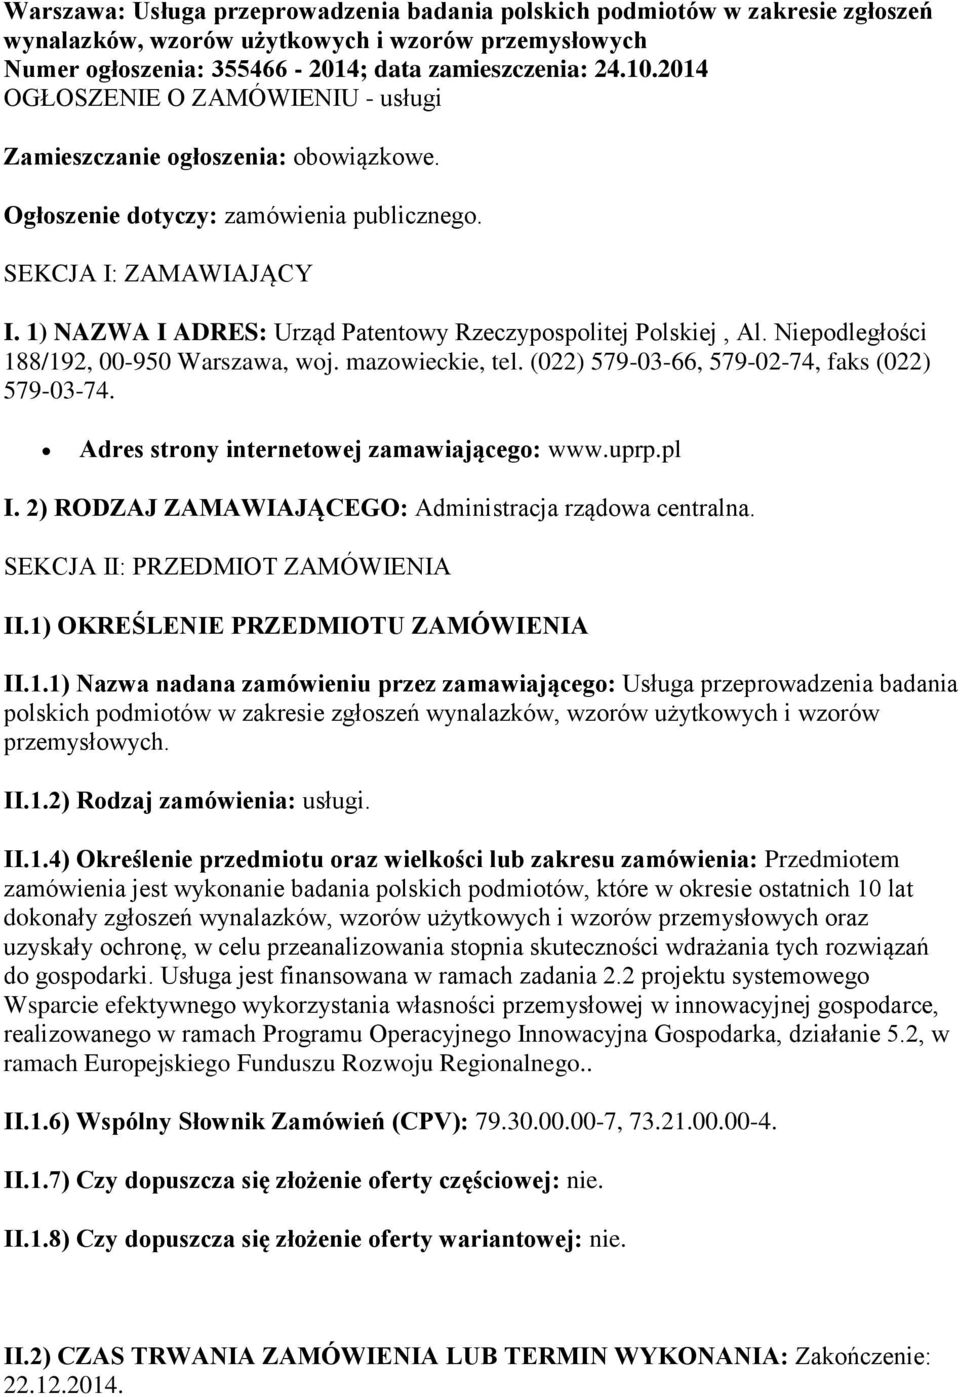 1) NAZWA I ADRES: Urząd Patentowy Rzeczypospolitej Polskiej, Al. Niepodległości 188/192, 00-950 Warszawa, woj. mazowieckie, tel. (022) 579-03-66, 579-02-74, faks (022) 579-03-74.